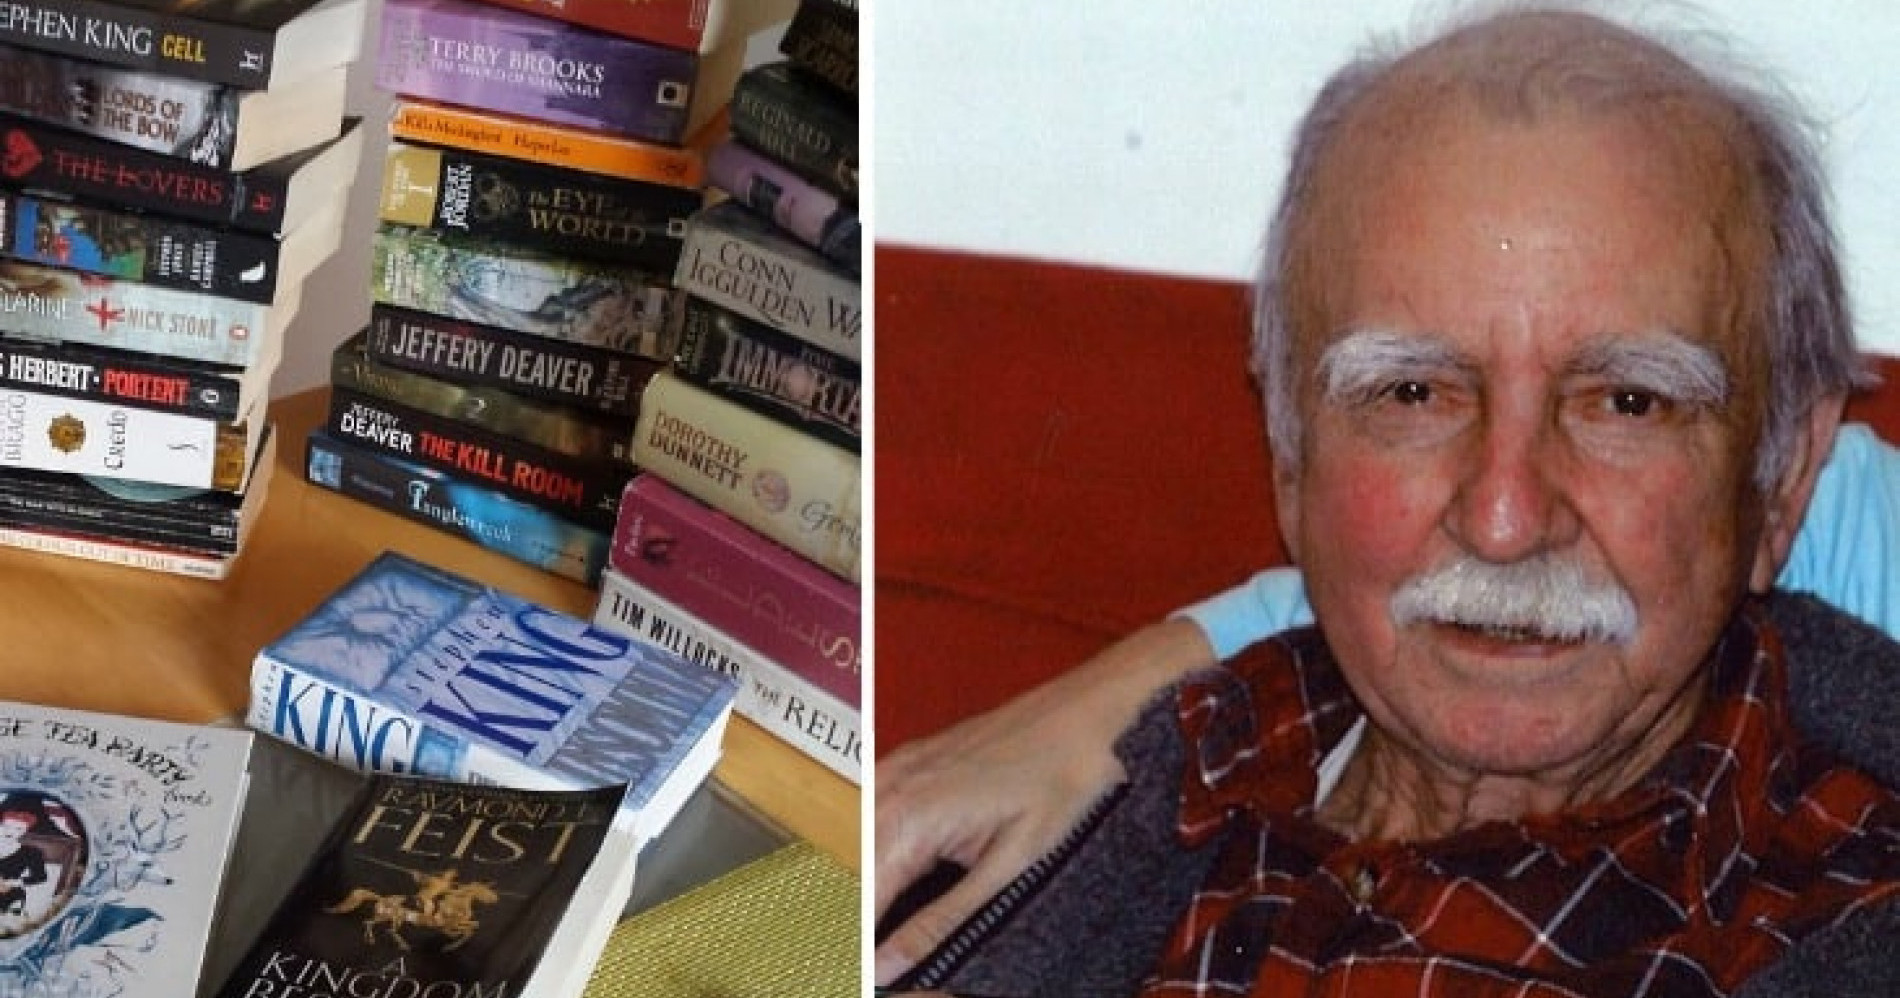 Ronald James Read mendonasikan sebagian besar hartanya ke sebuah perpustakaan setelah meninggal. (Sumber gambar: trueactivist.com)